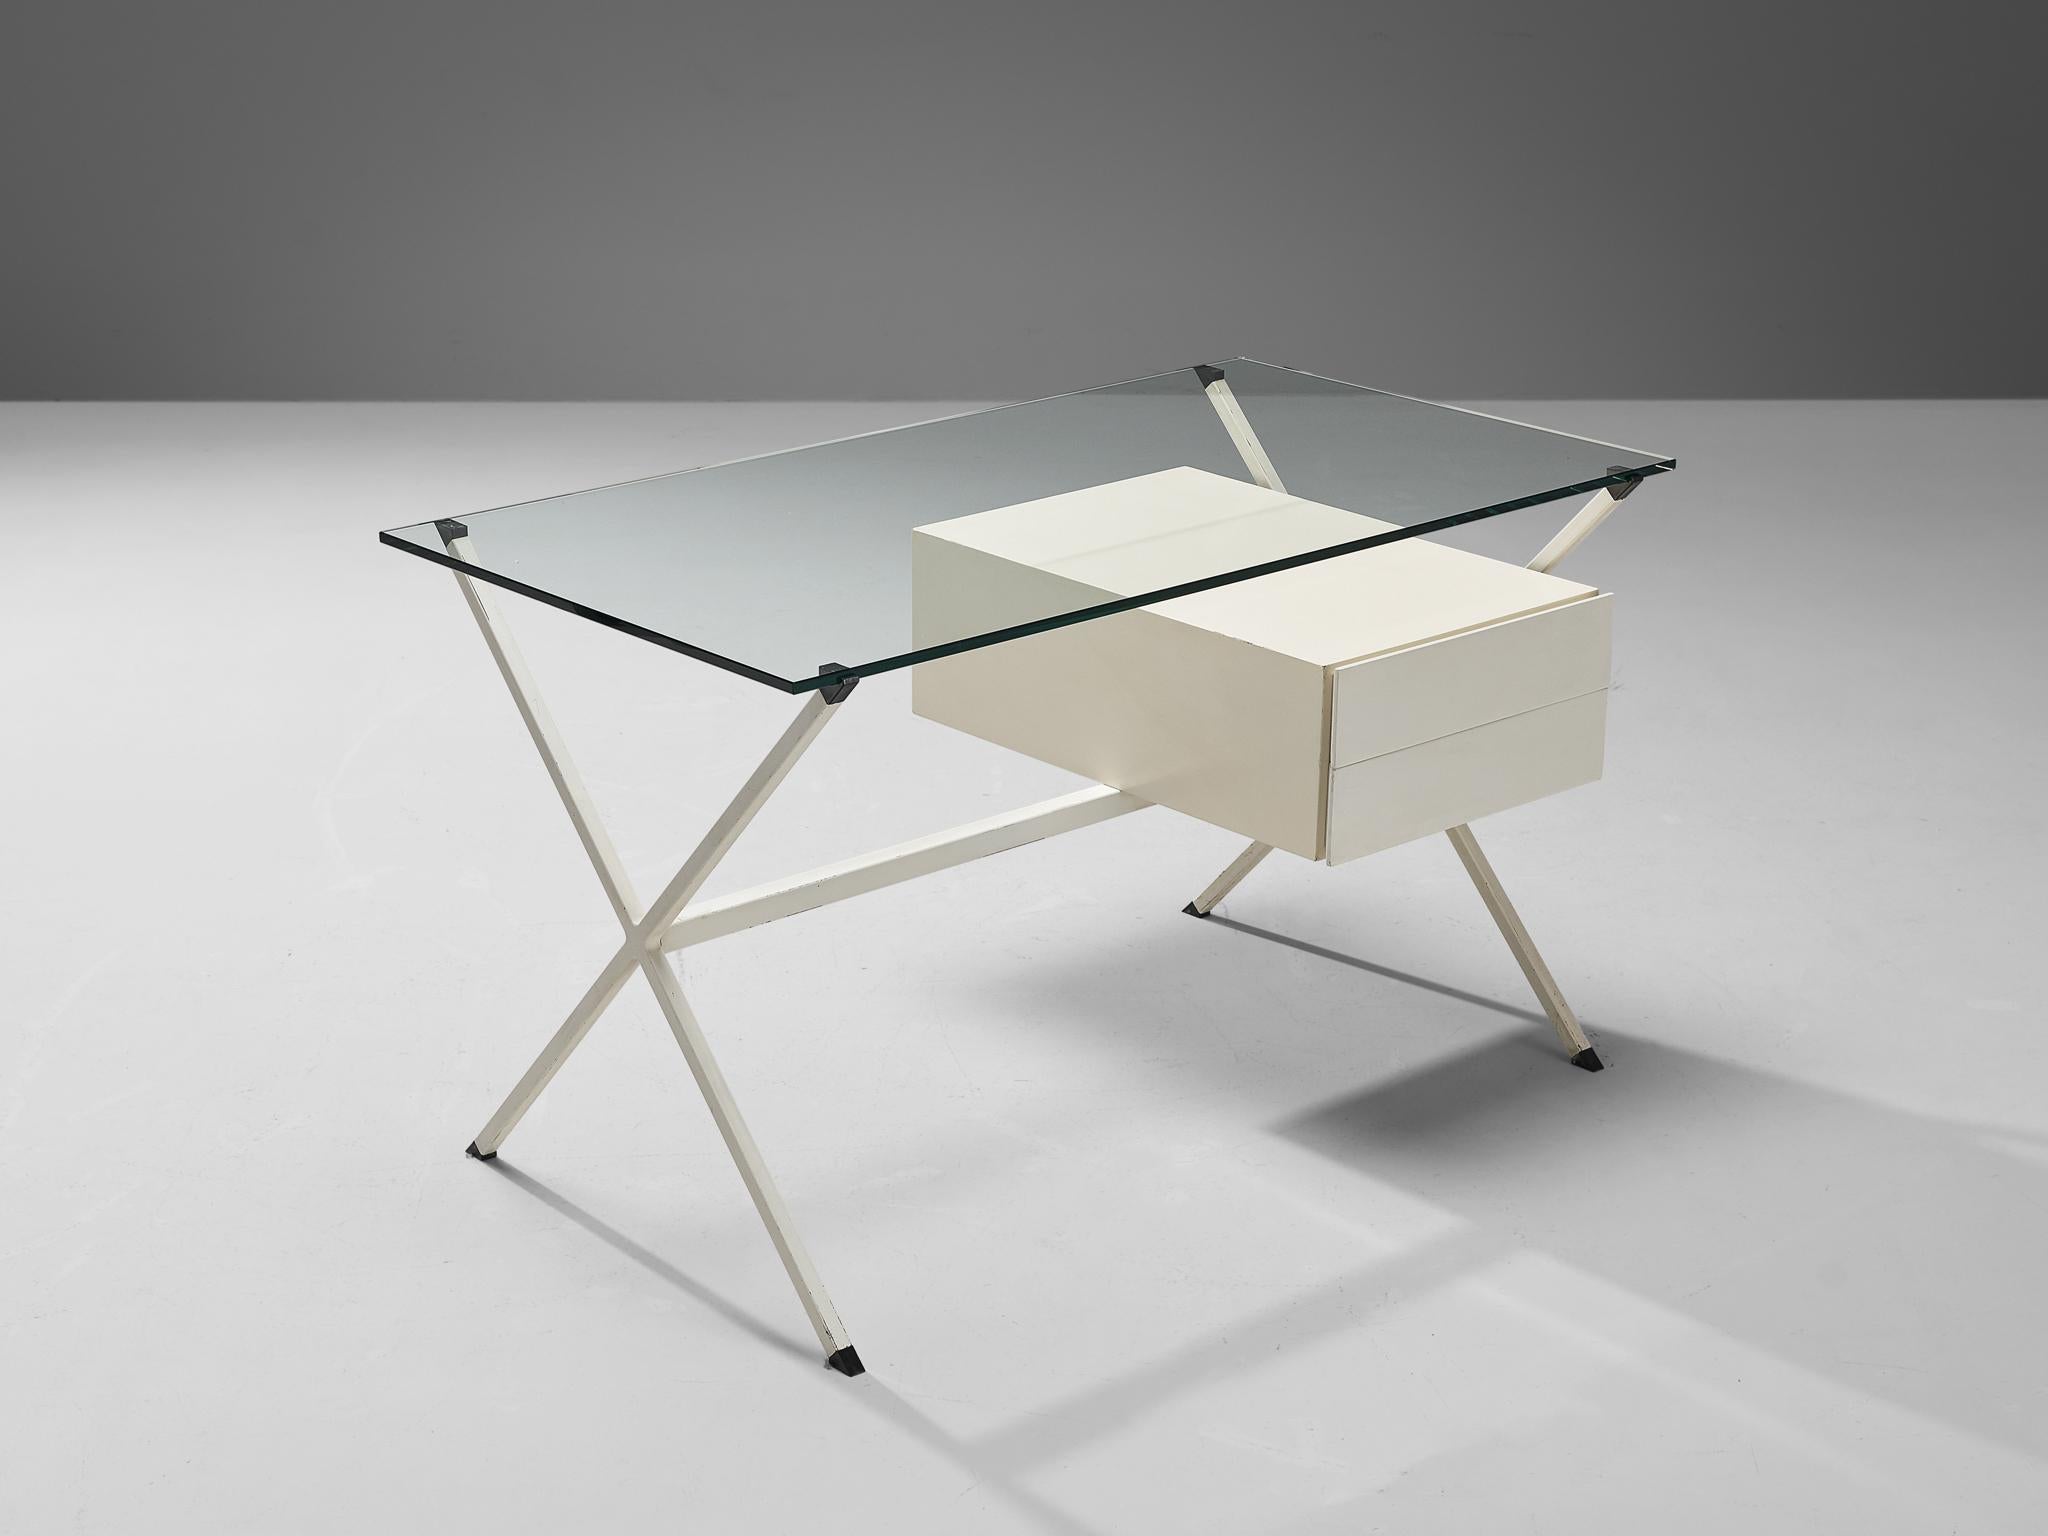 Franco Albini für Knoll, Modell 80, Glas, lackiertes Holz, lackierter Stahl, Italien, 1949

Der Schreibtisch Modell 80 von Franco Albini kombiniert Glas, Stahl und Holz, was zu einem minimalistischen Gleichgewicht führt. Der Schreibtisch entspricht